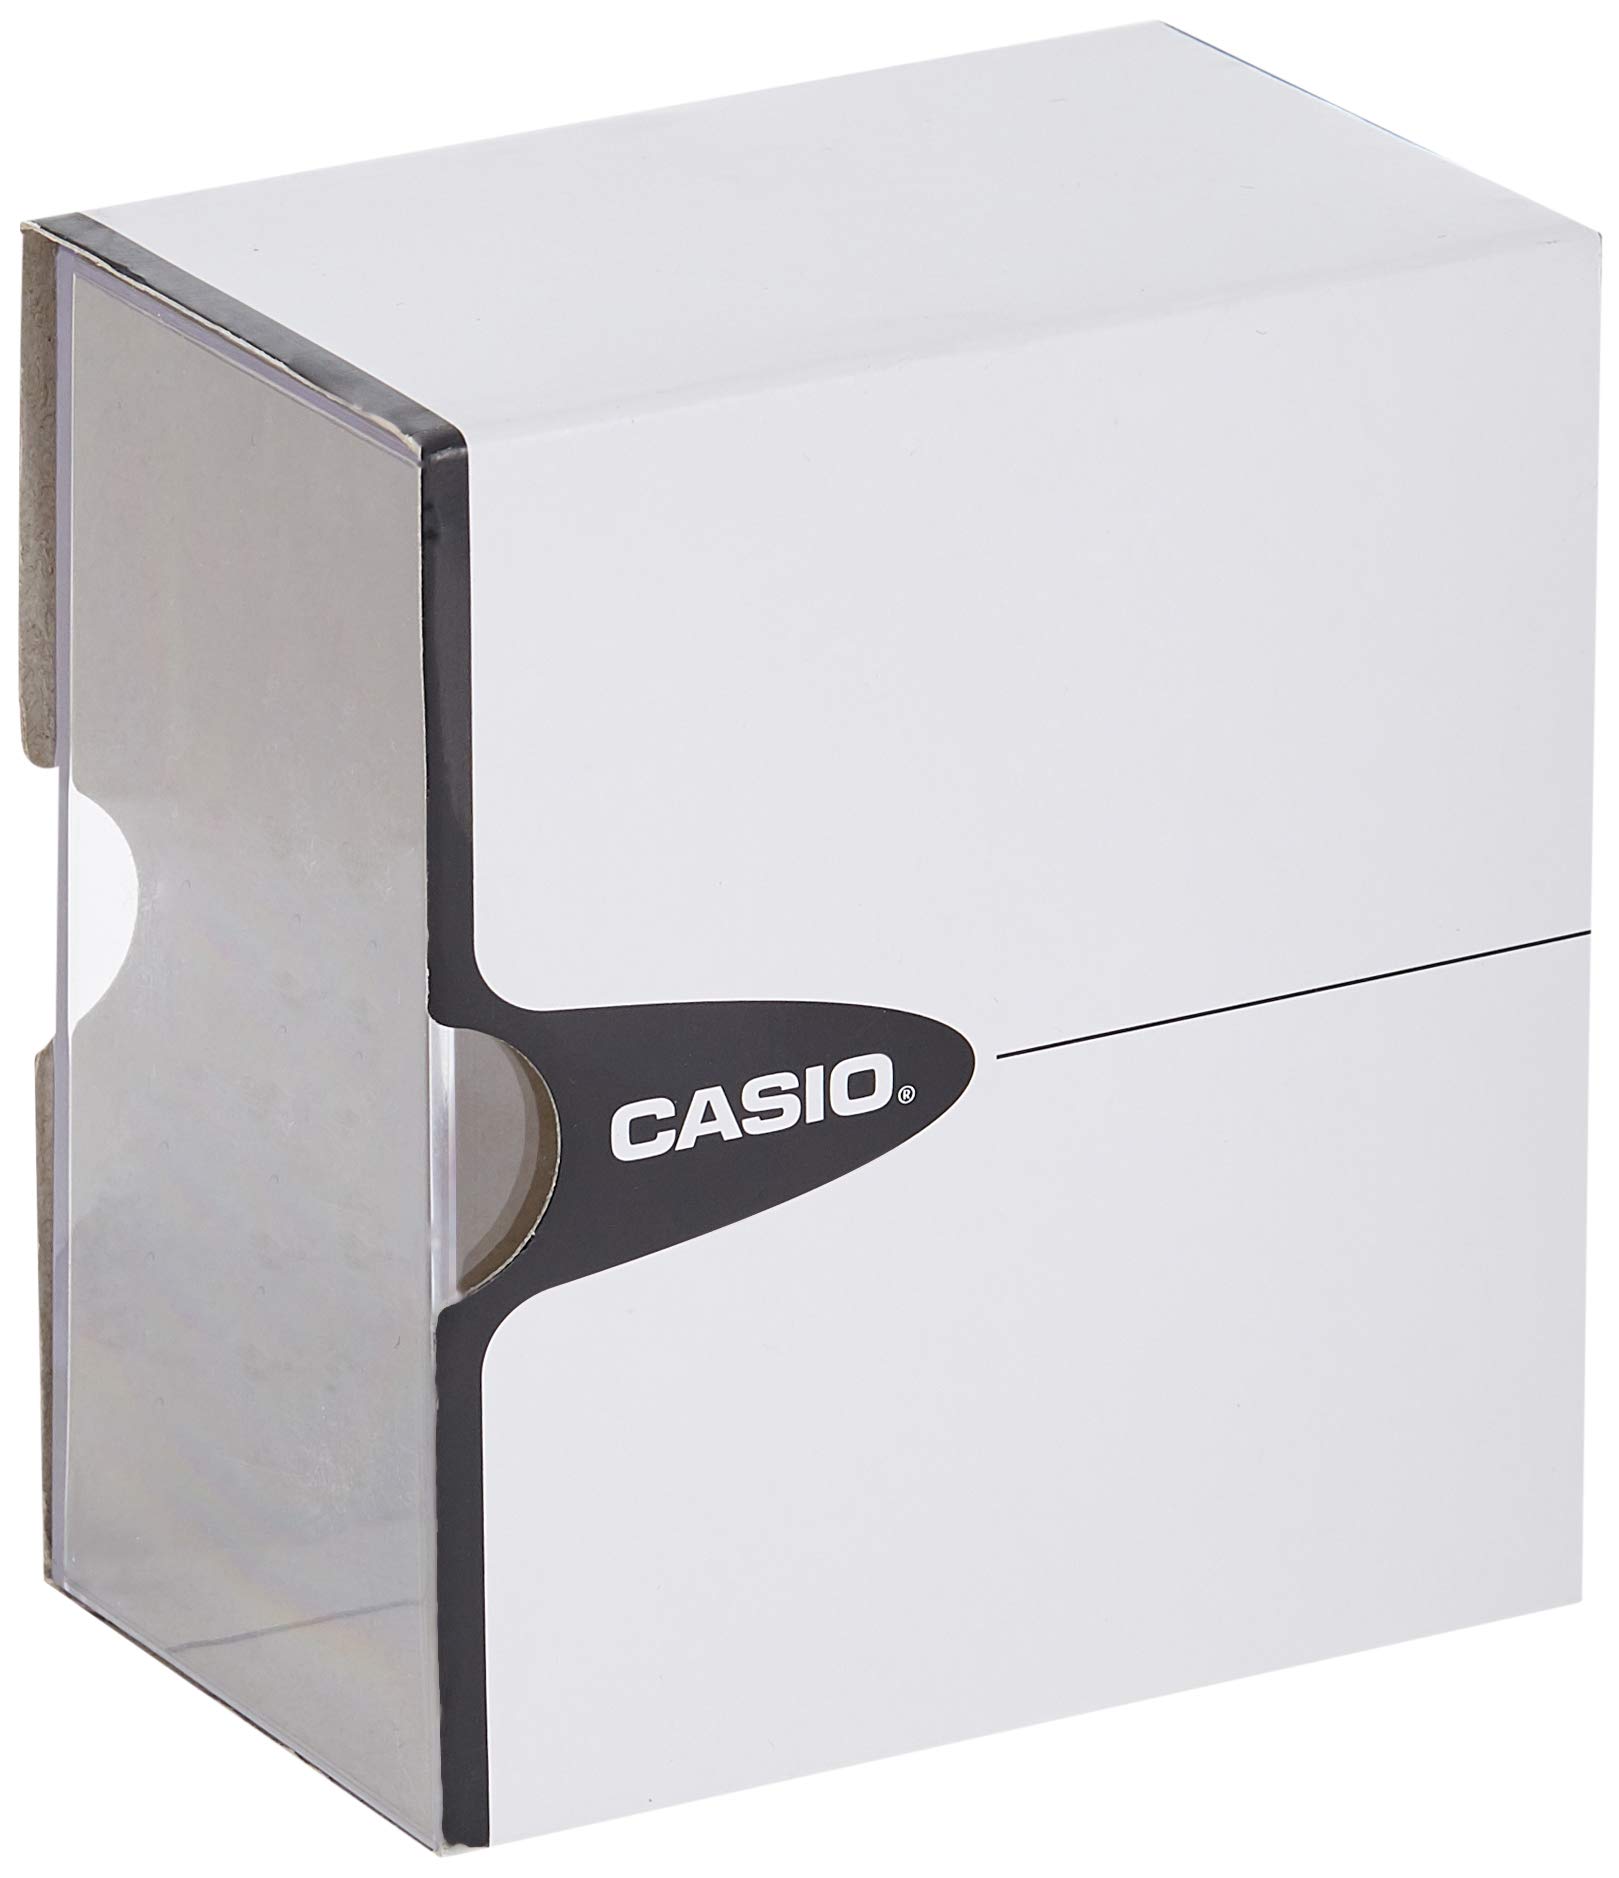 Casio Classic Silver Watch MTP1335D-7A